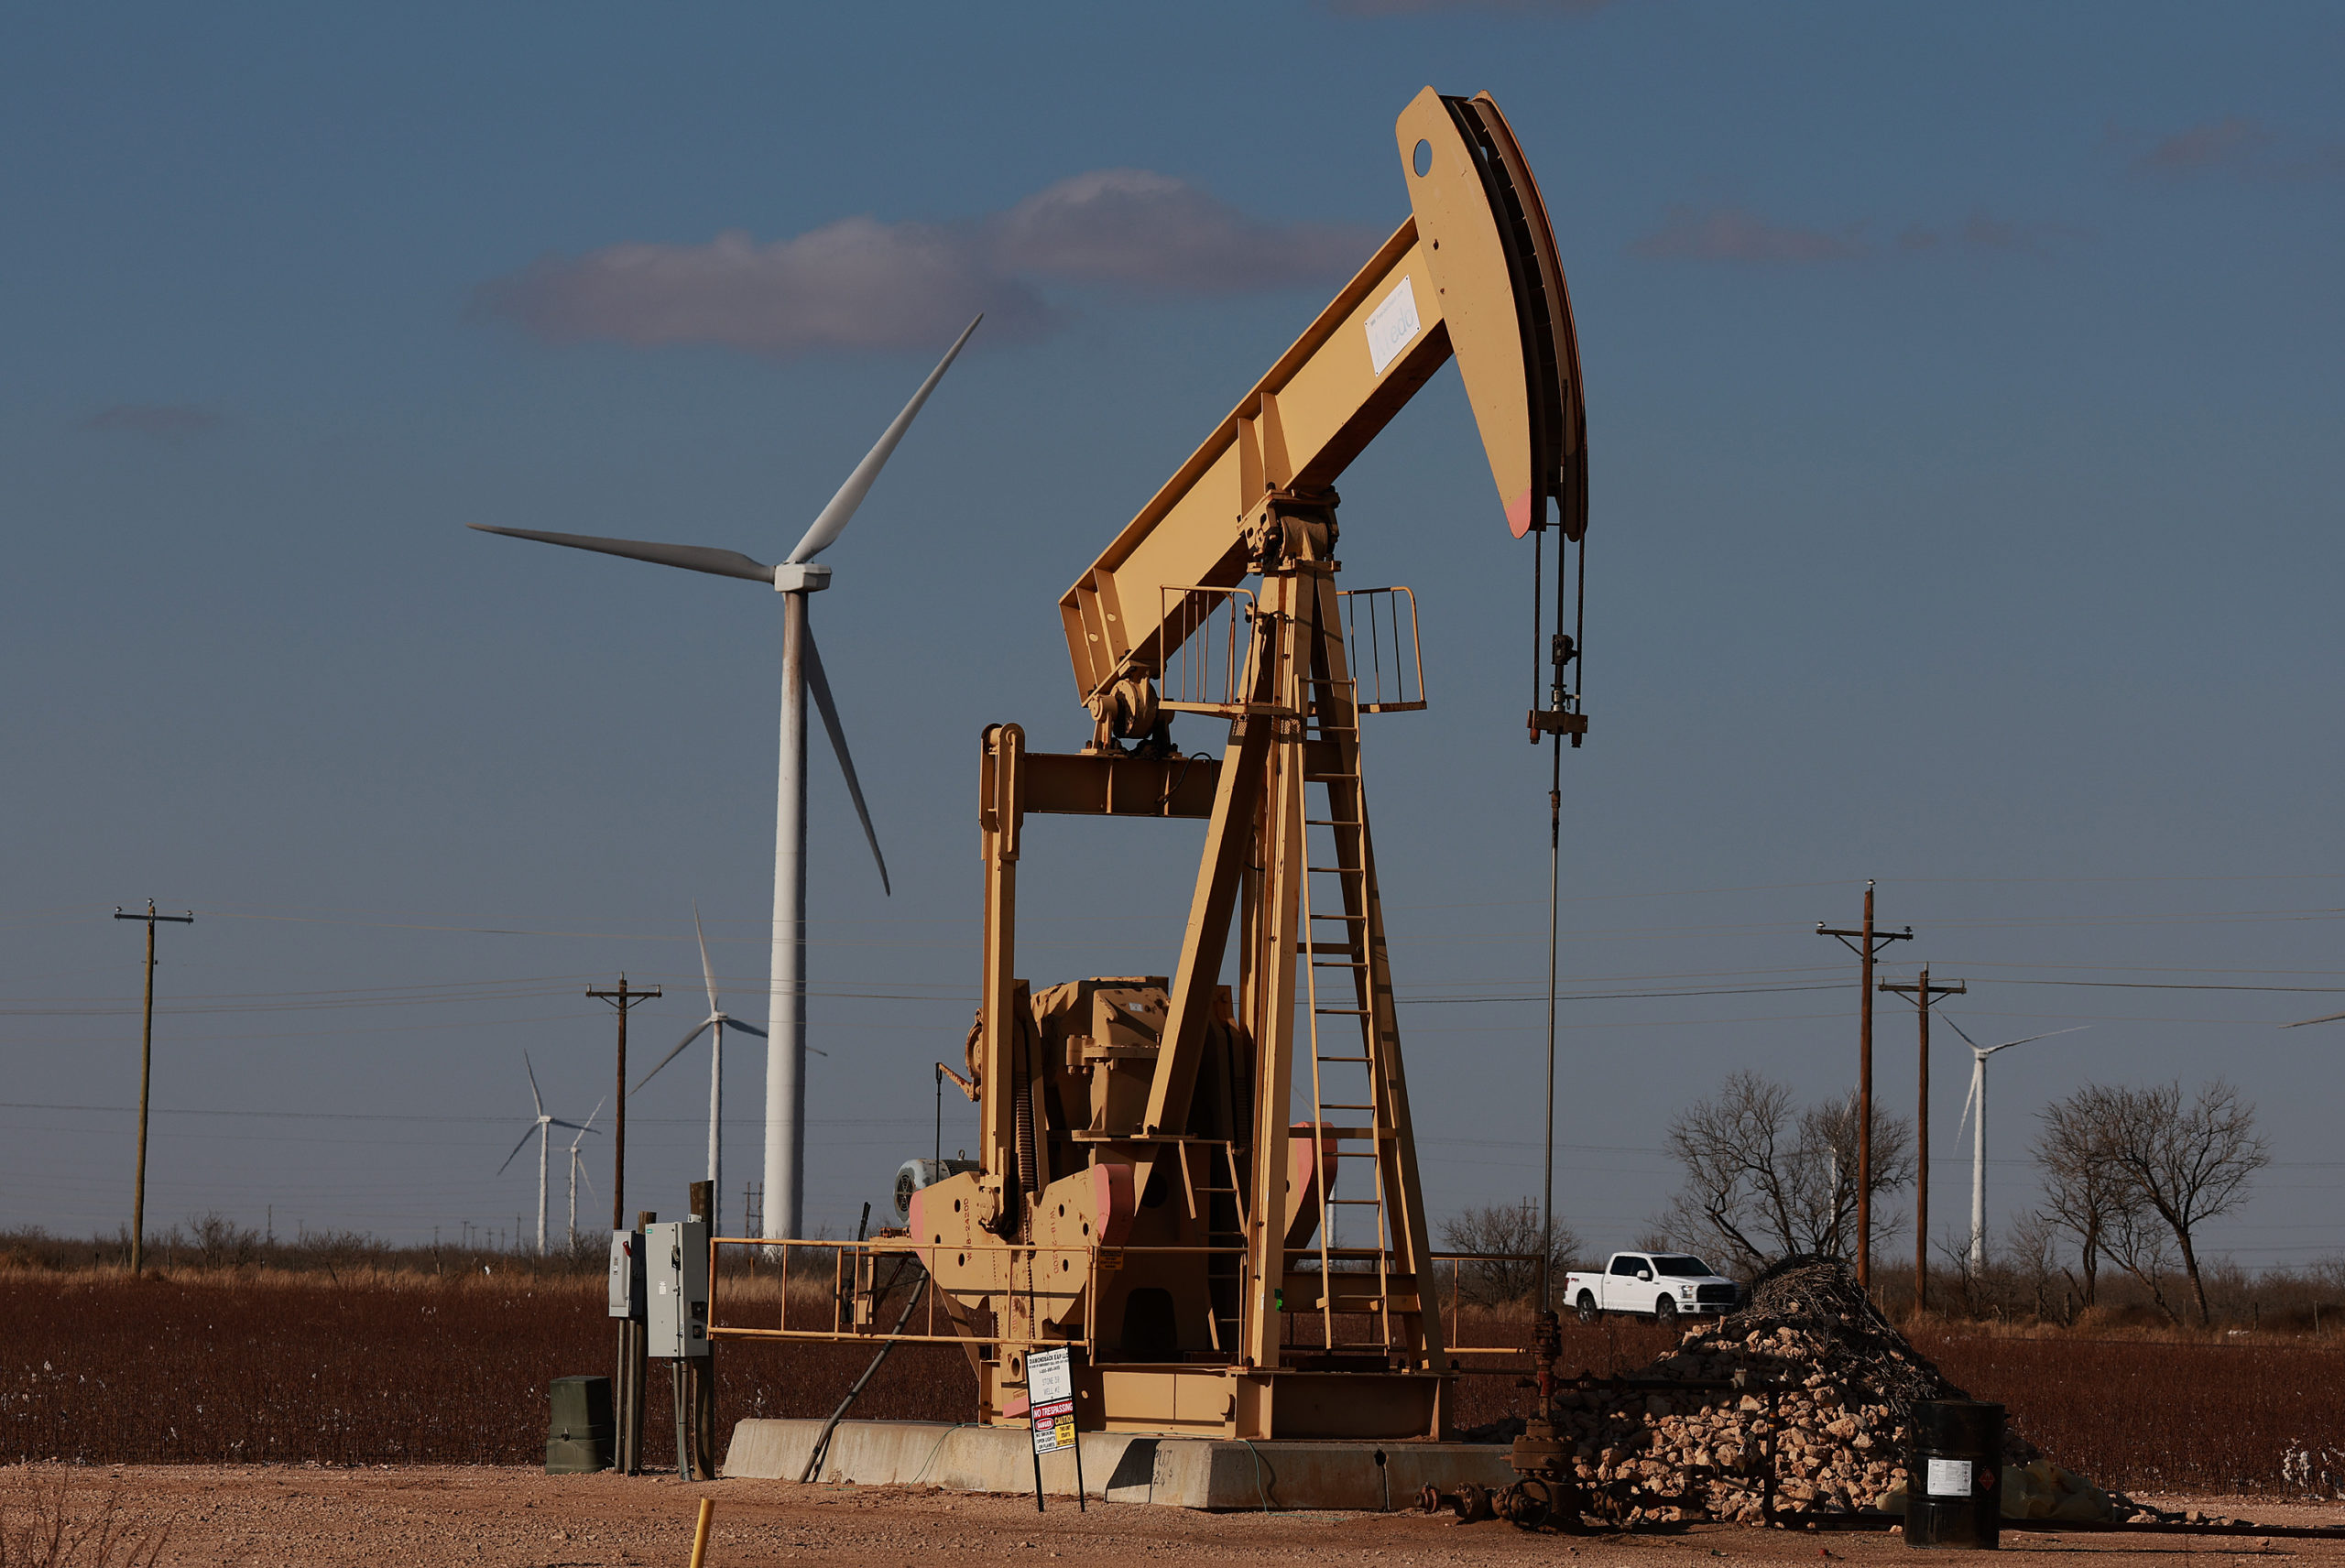 An oil pumpjack works near wind turbines in a Permian Basin oil field on March 11 in Stanton, Texas. (Joe Raedle/Getty Images)